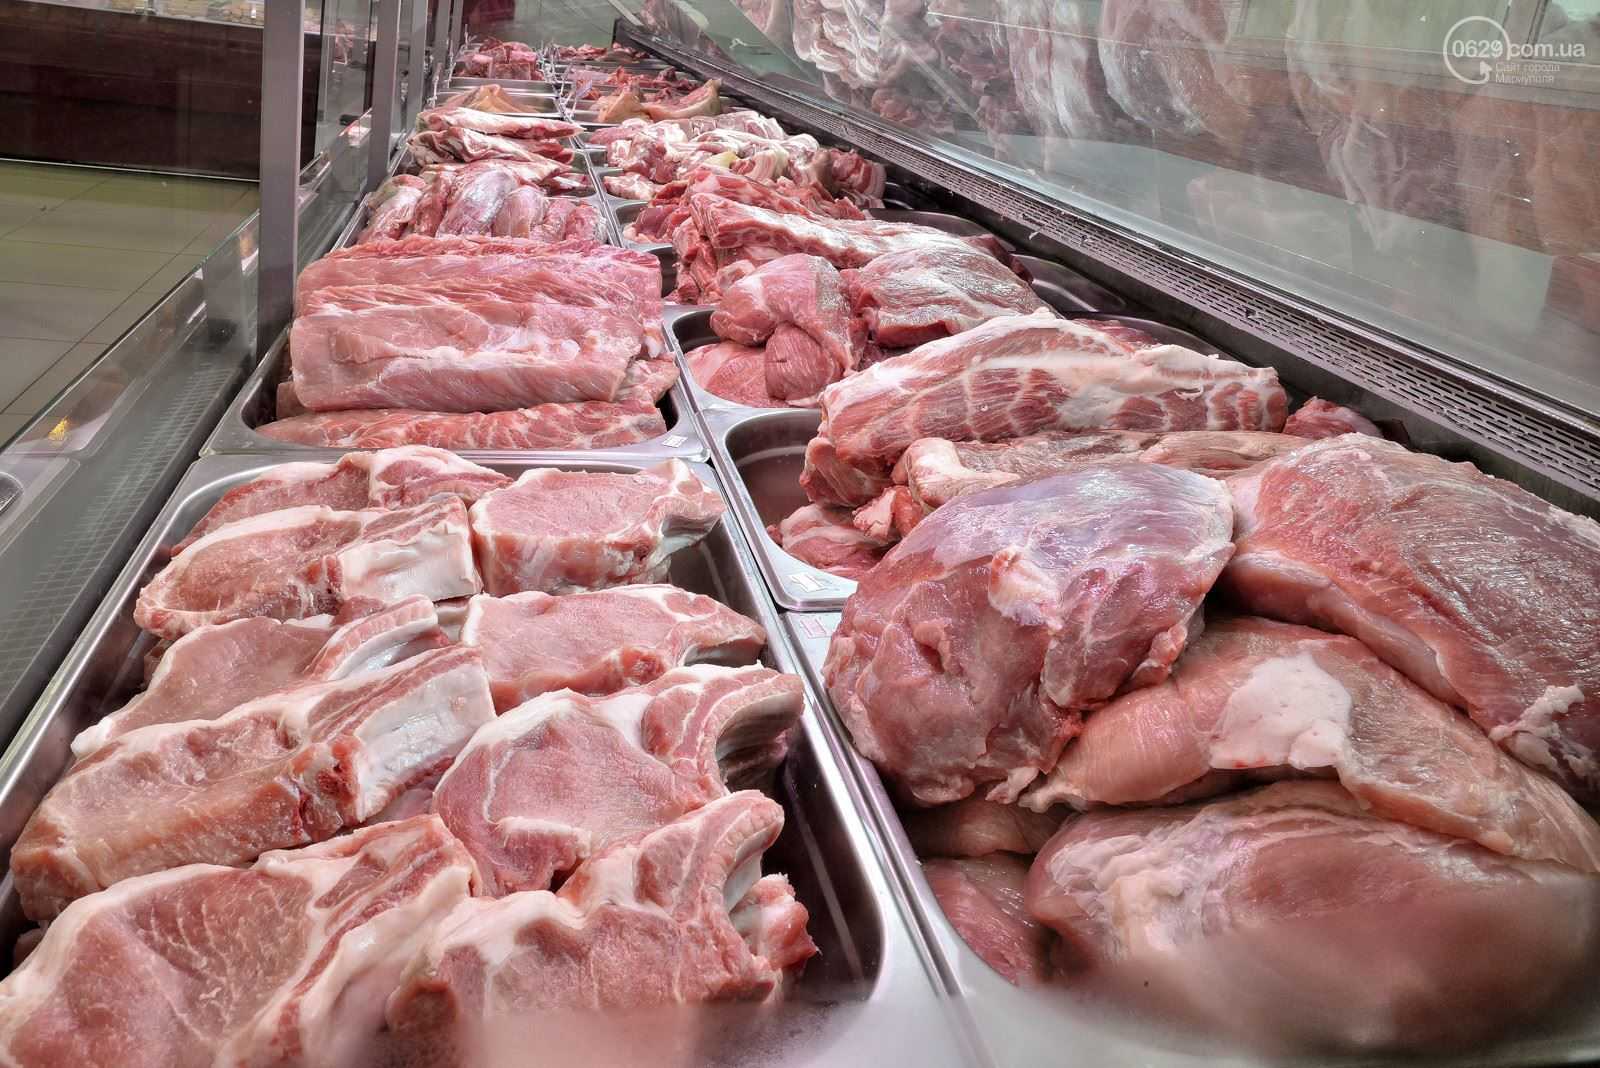 Как открыть мясной магазин с нуля — продажа мяса как бизнес